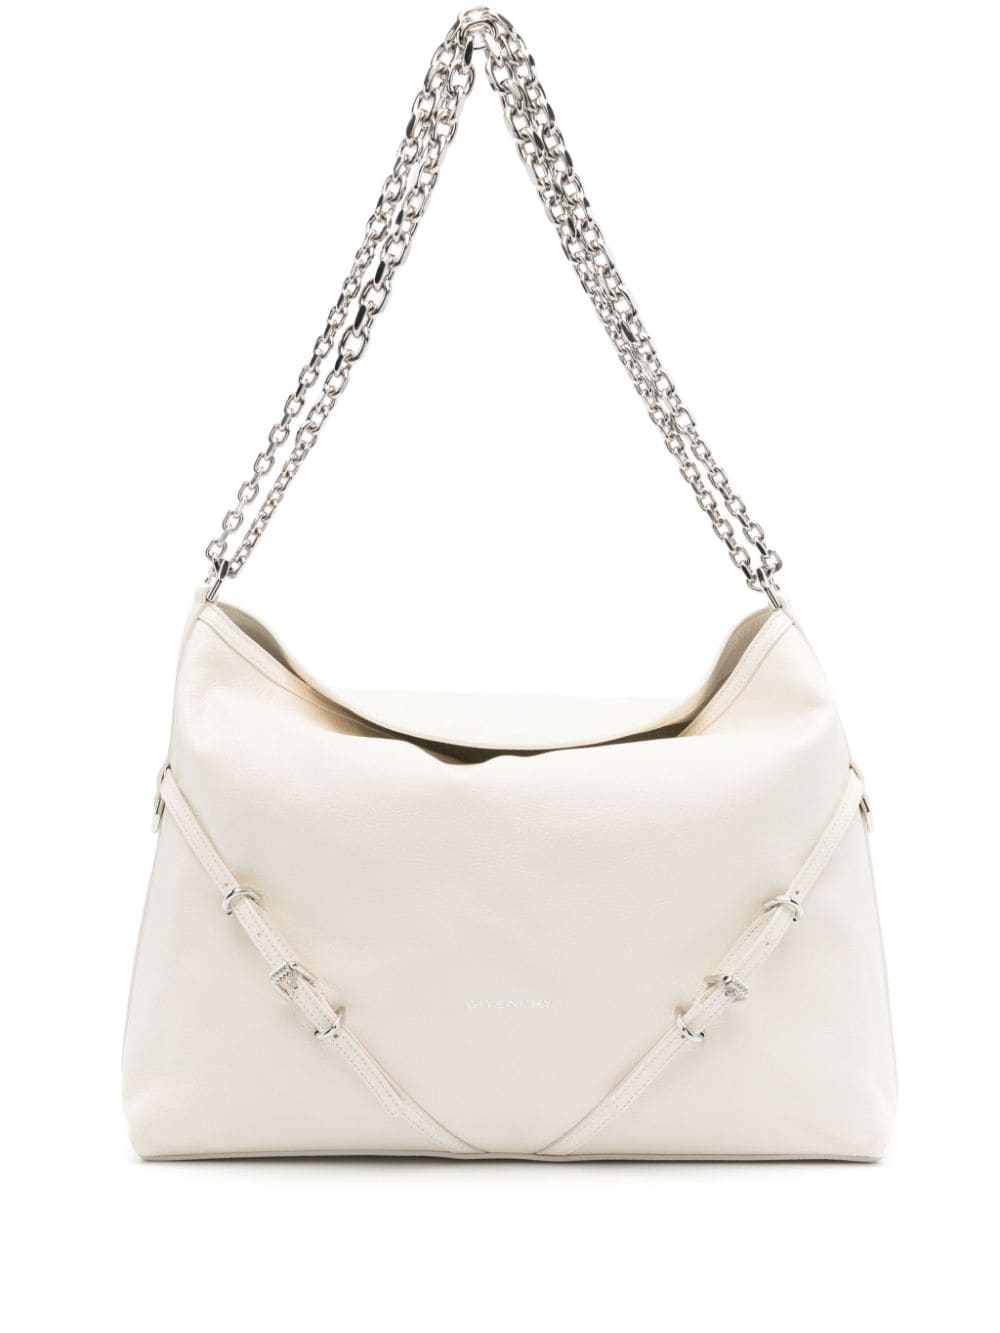 Shop Givenchy Ivory White Leather Shoulder Handbag For Women